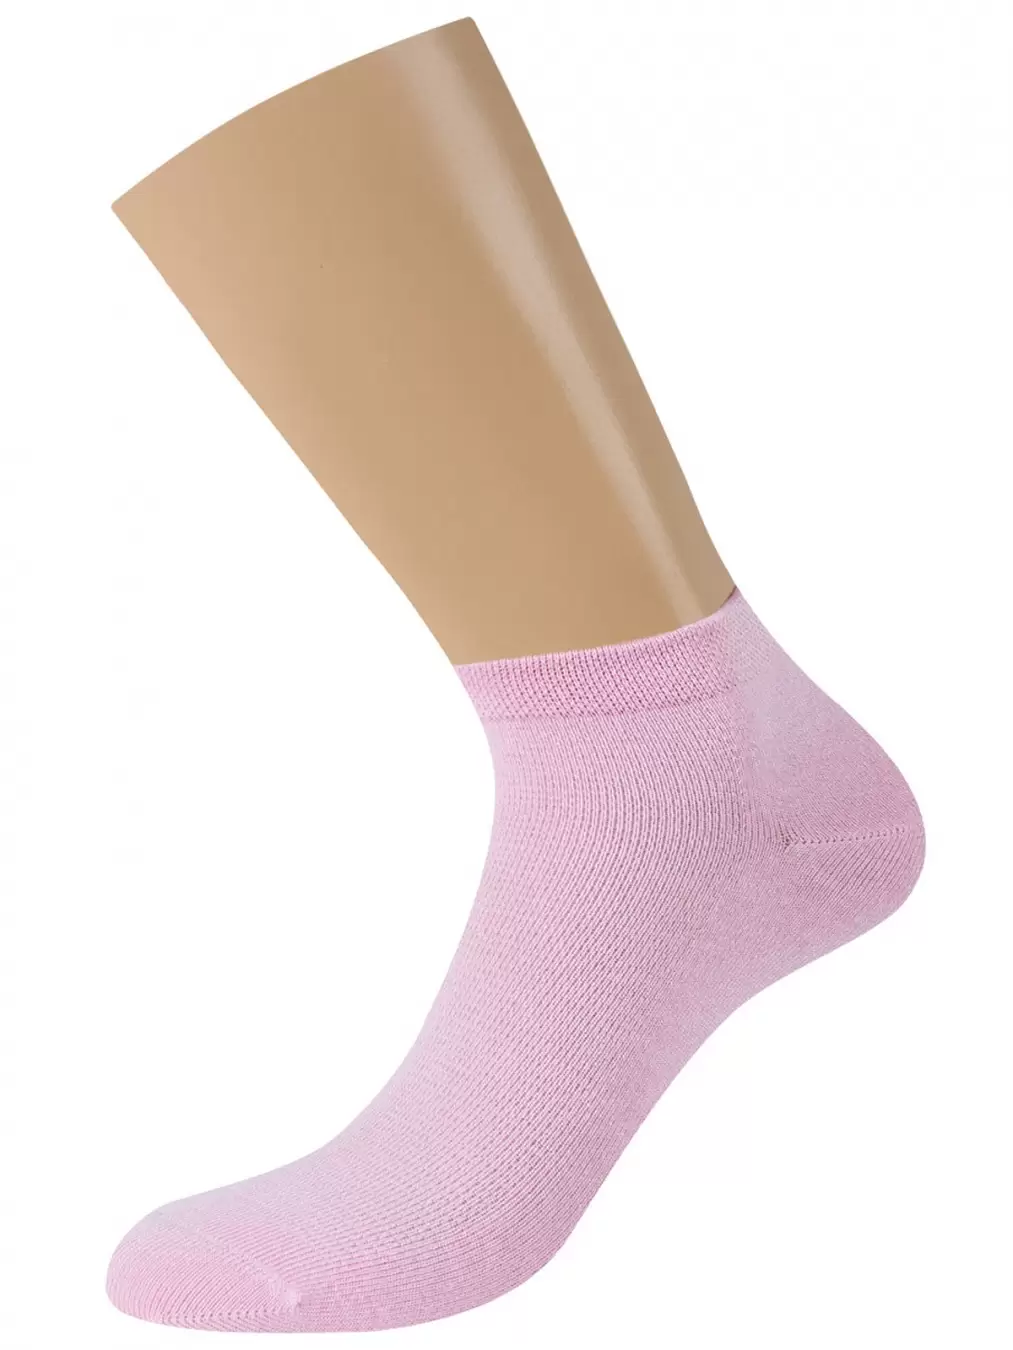 Minimi MINI BAMBOO 2201, носки женские (изображение 1)